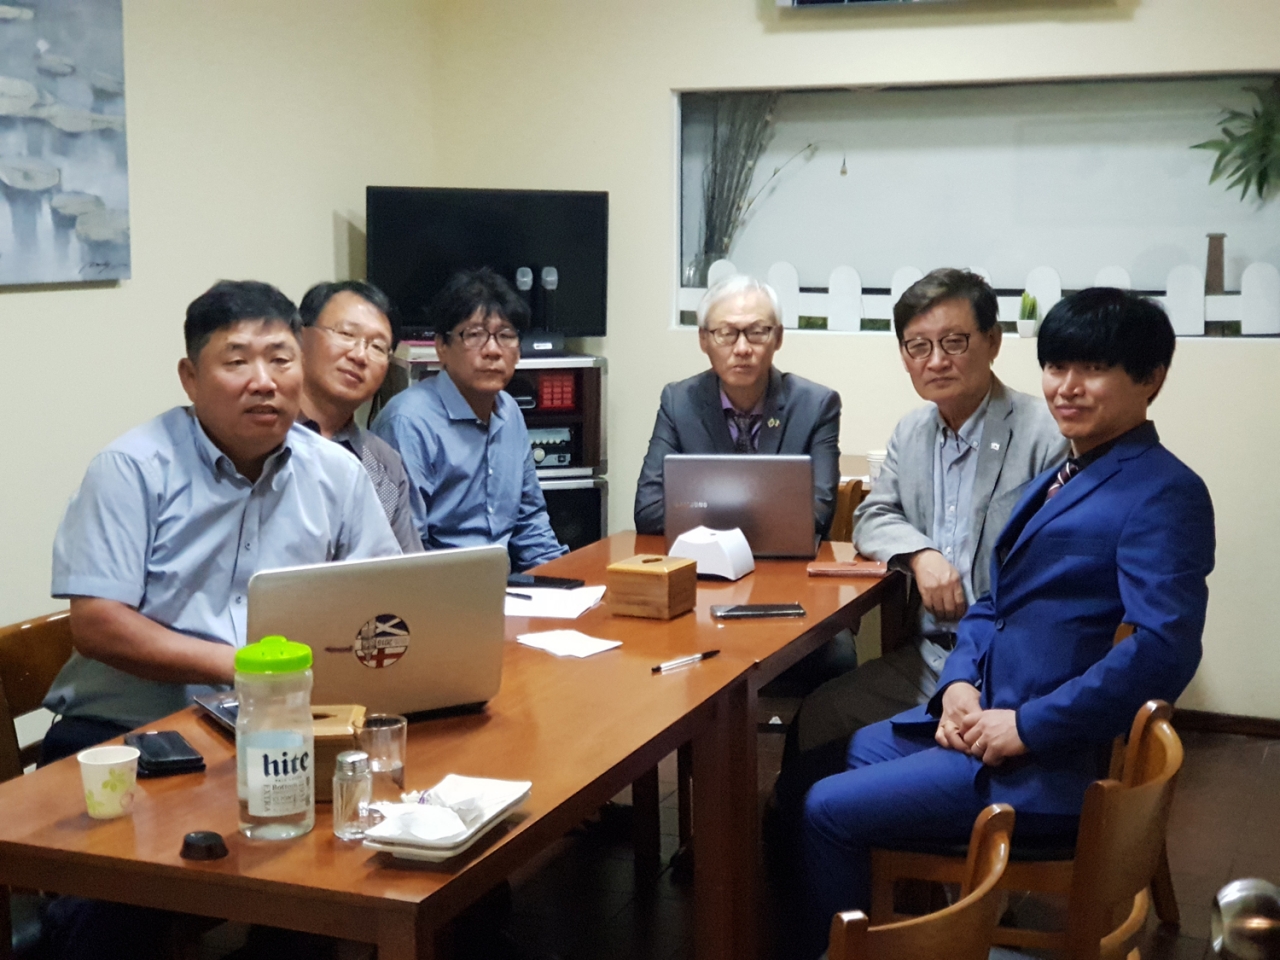 우루과이한인회 회원들과 기념촬영